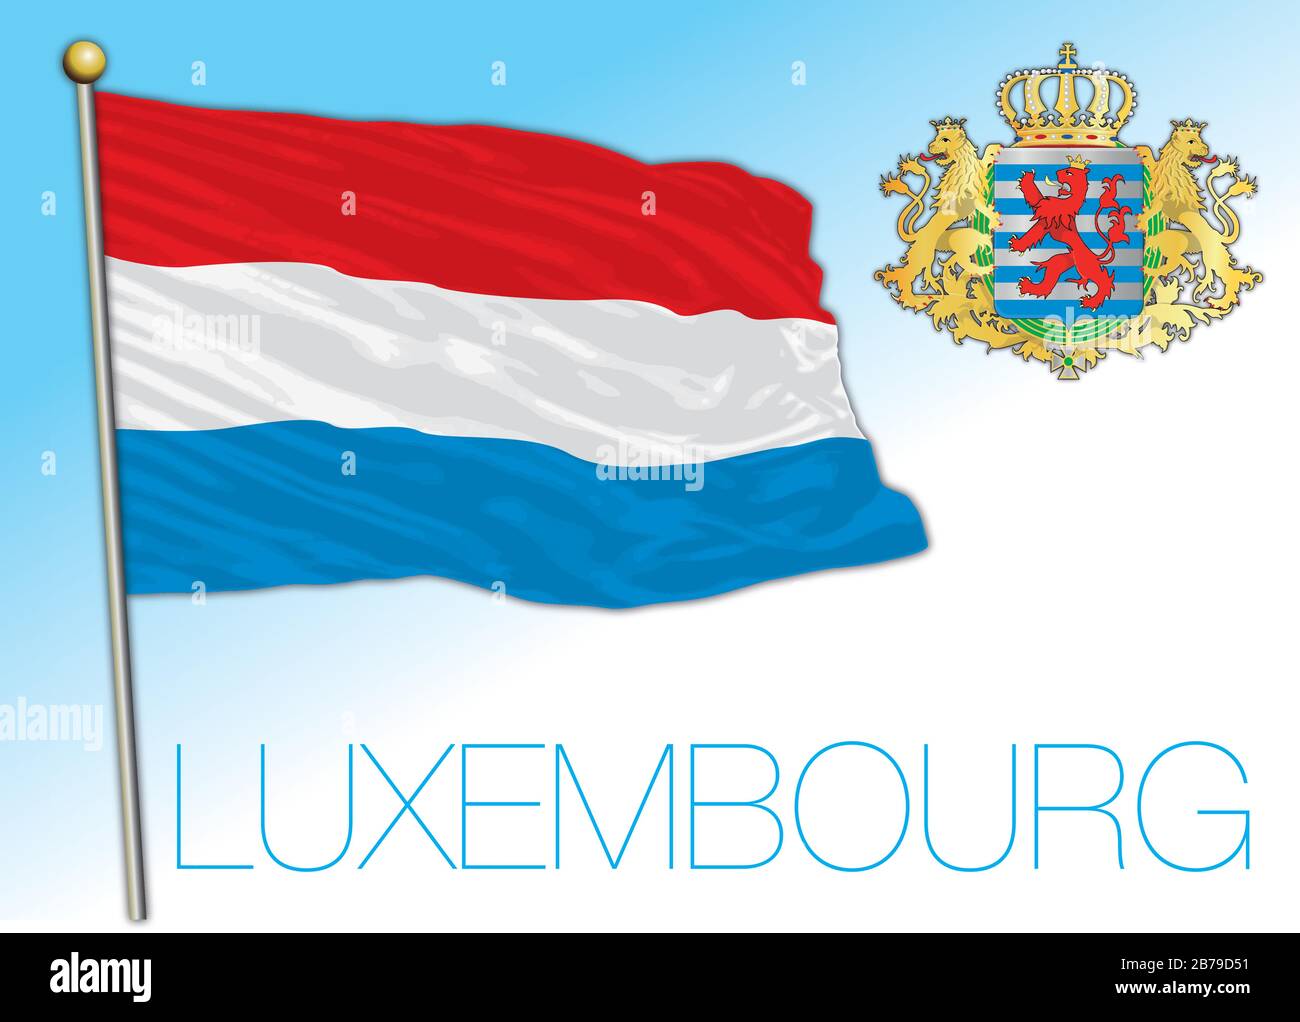 Luxemburgo bandera nacional oficial y escudo de armas, Unión Europea, ilustración vectorial Ilustración del Vector